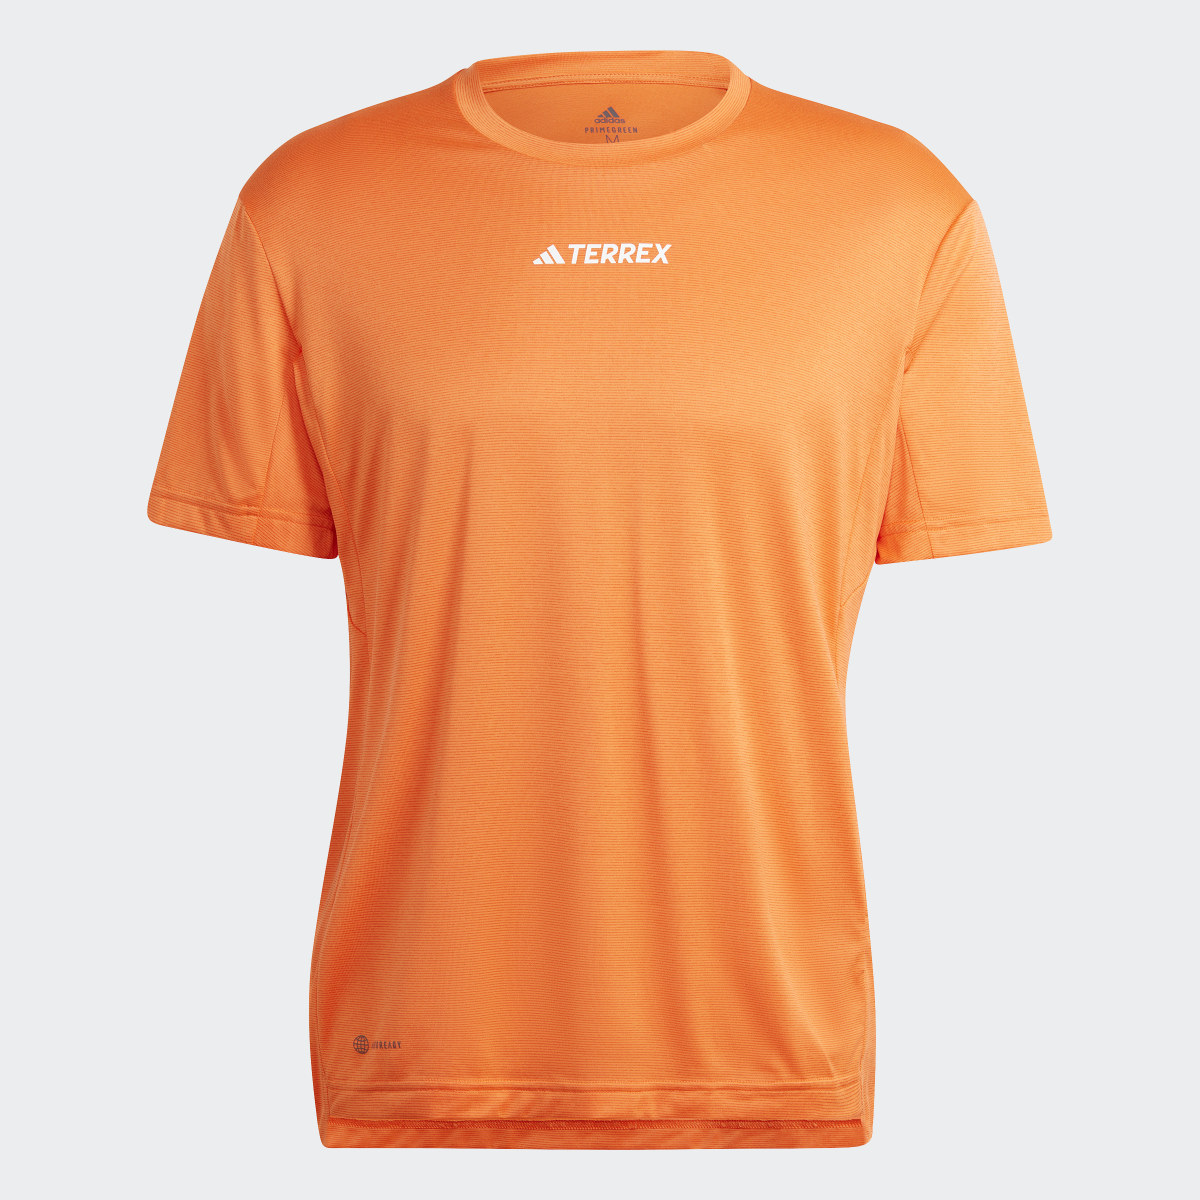 Adidas Camiseta Terrex Multi. 5